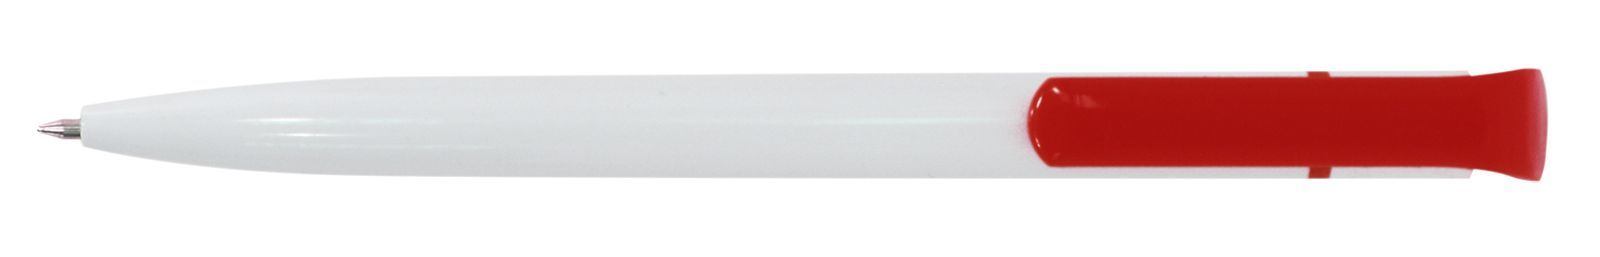 Ручка для логотипа шариковая автоматическая INFORMAT НИКА 0,7 мм, синяя, бело-красный корпус оптом